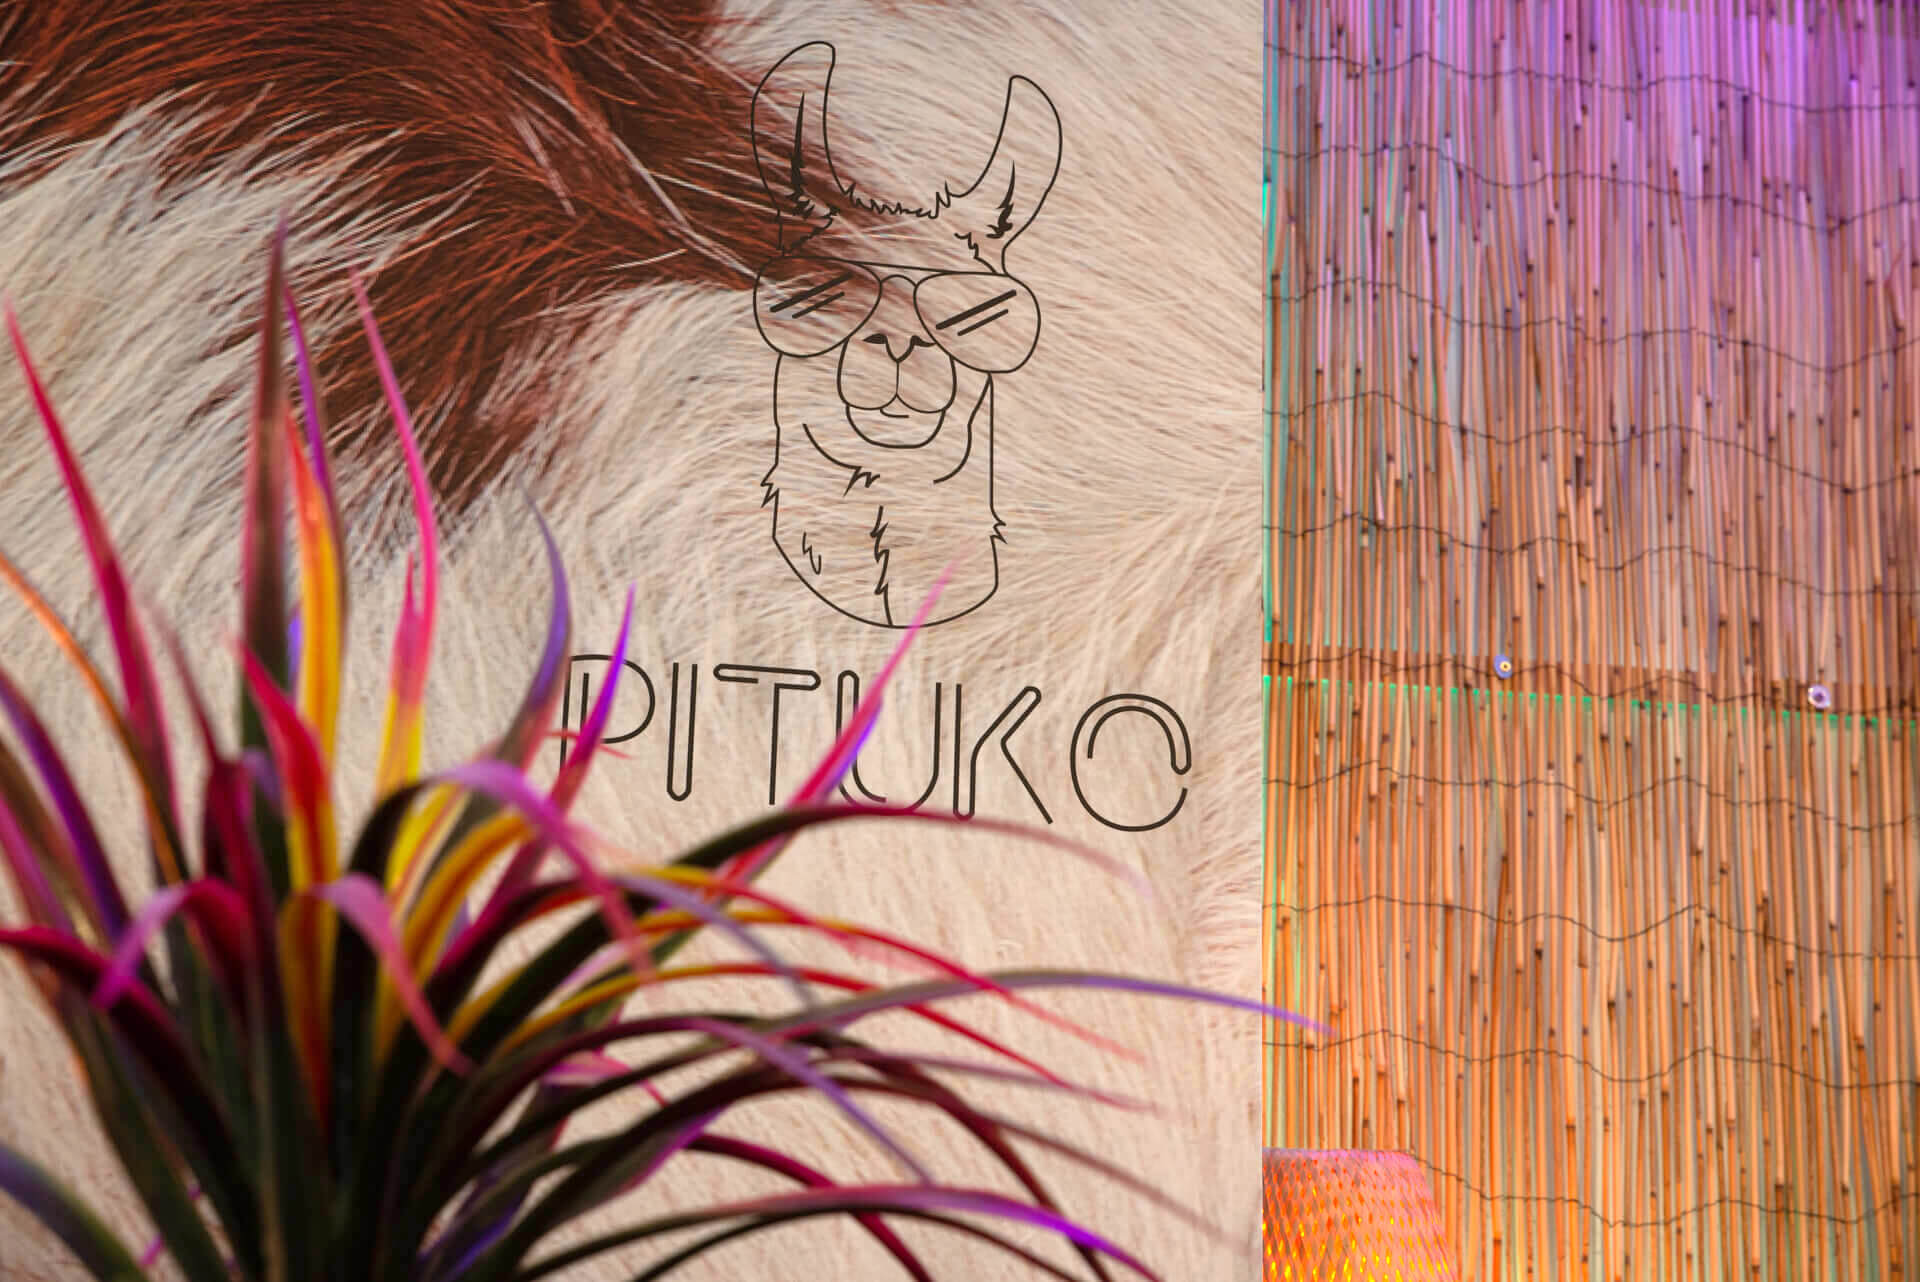 Restaurante Pituko